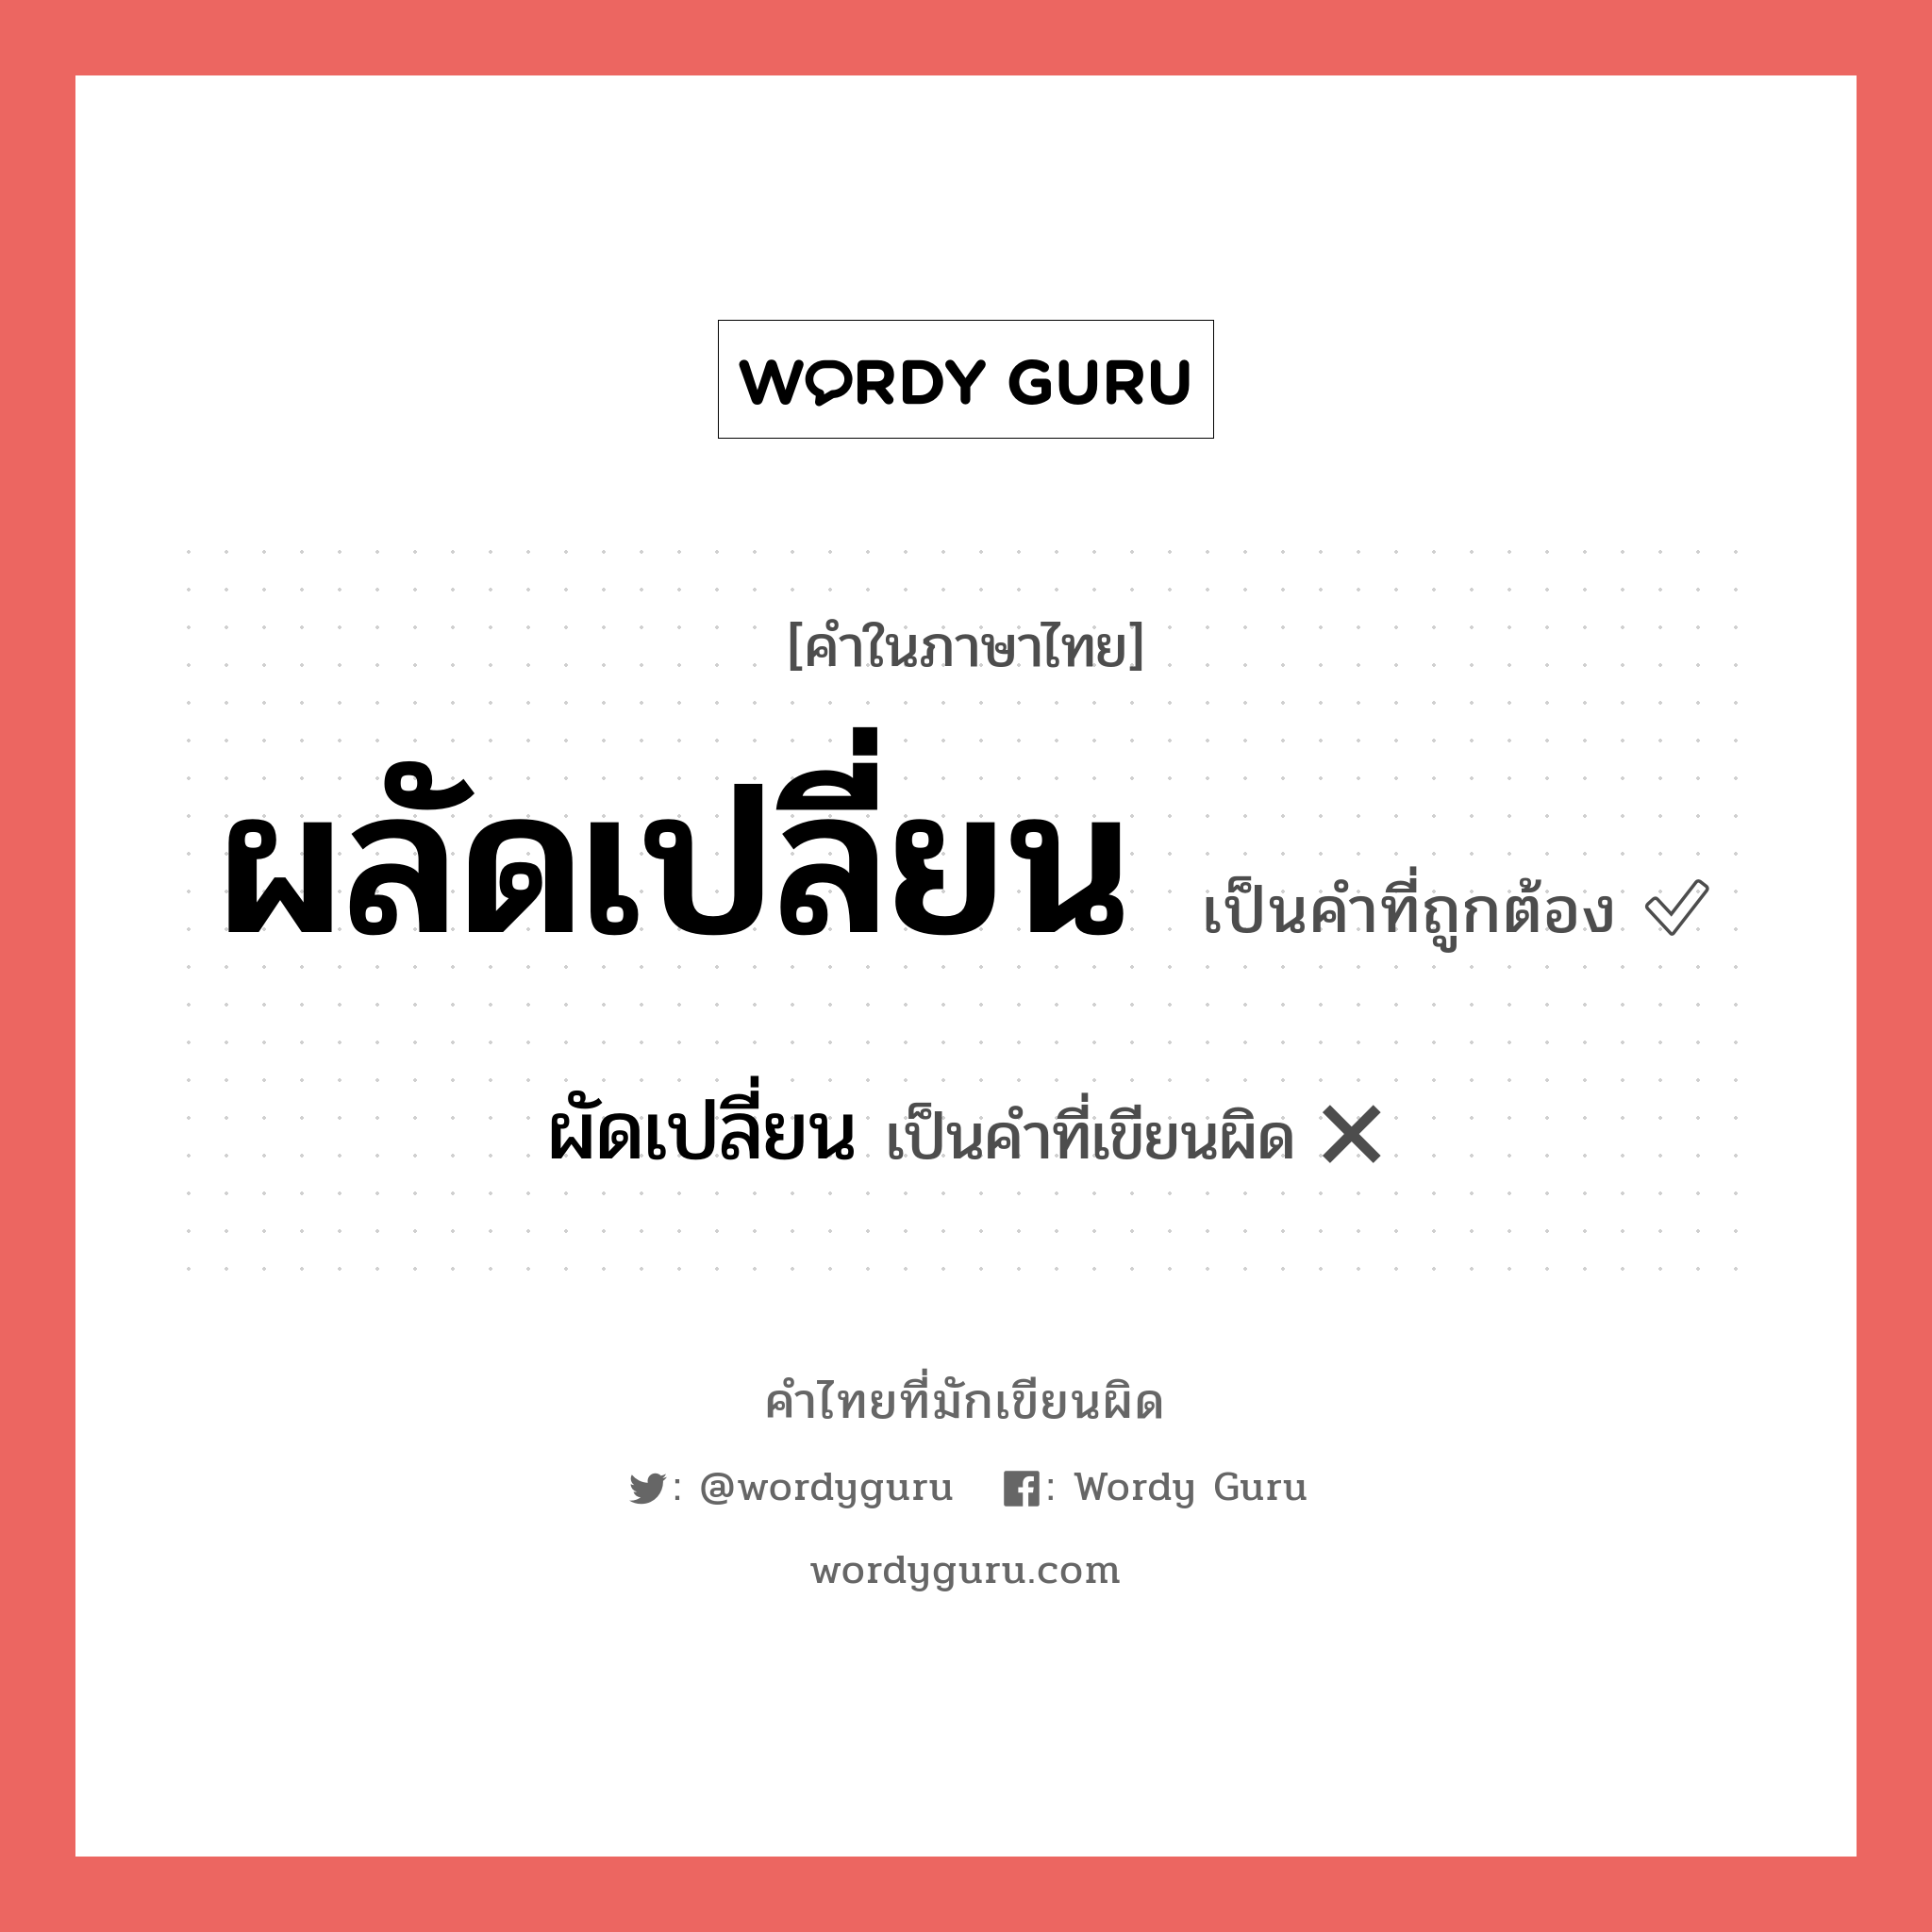 ผลัดเปลี่ยน หรือ ผัดเปลี่ยน คำไหนเขียนถูก?, คำในภาษาไทยที่มักเขียนผิด ผลัดเปลี่ยน คำที่ผิด ❌ ผัดเปลี่ยน